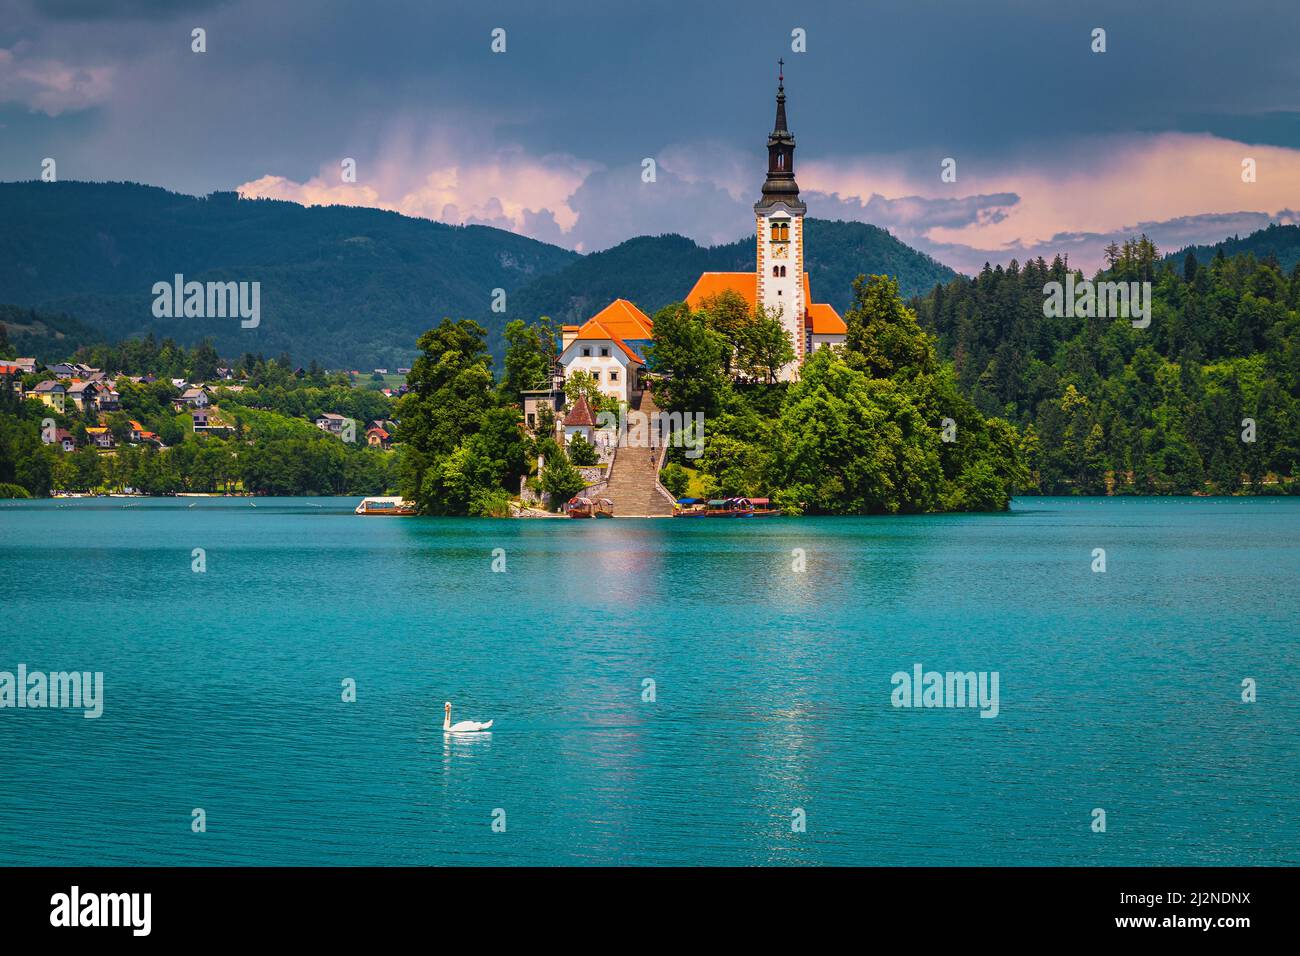 Fantastische touristische Attraktion und Ausflugsziel mit erstaunlichen alten Kirche auf der kleinen Insel, Bleder See, Slowenien, Europa Stockfoto